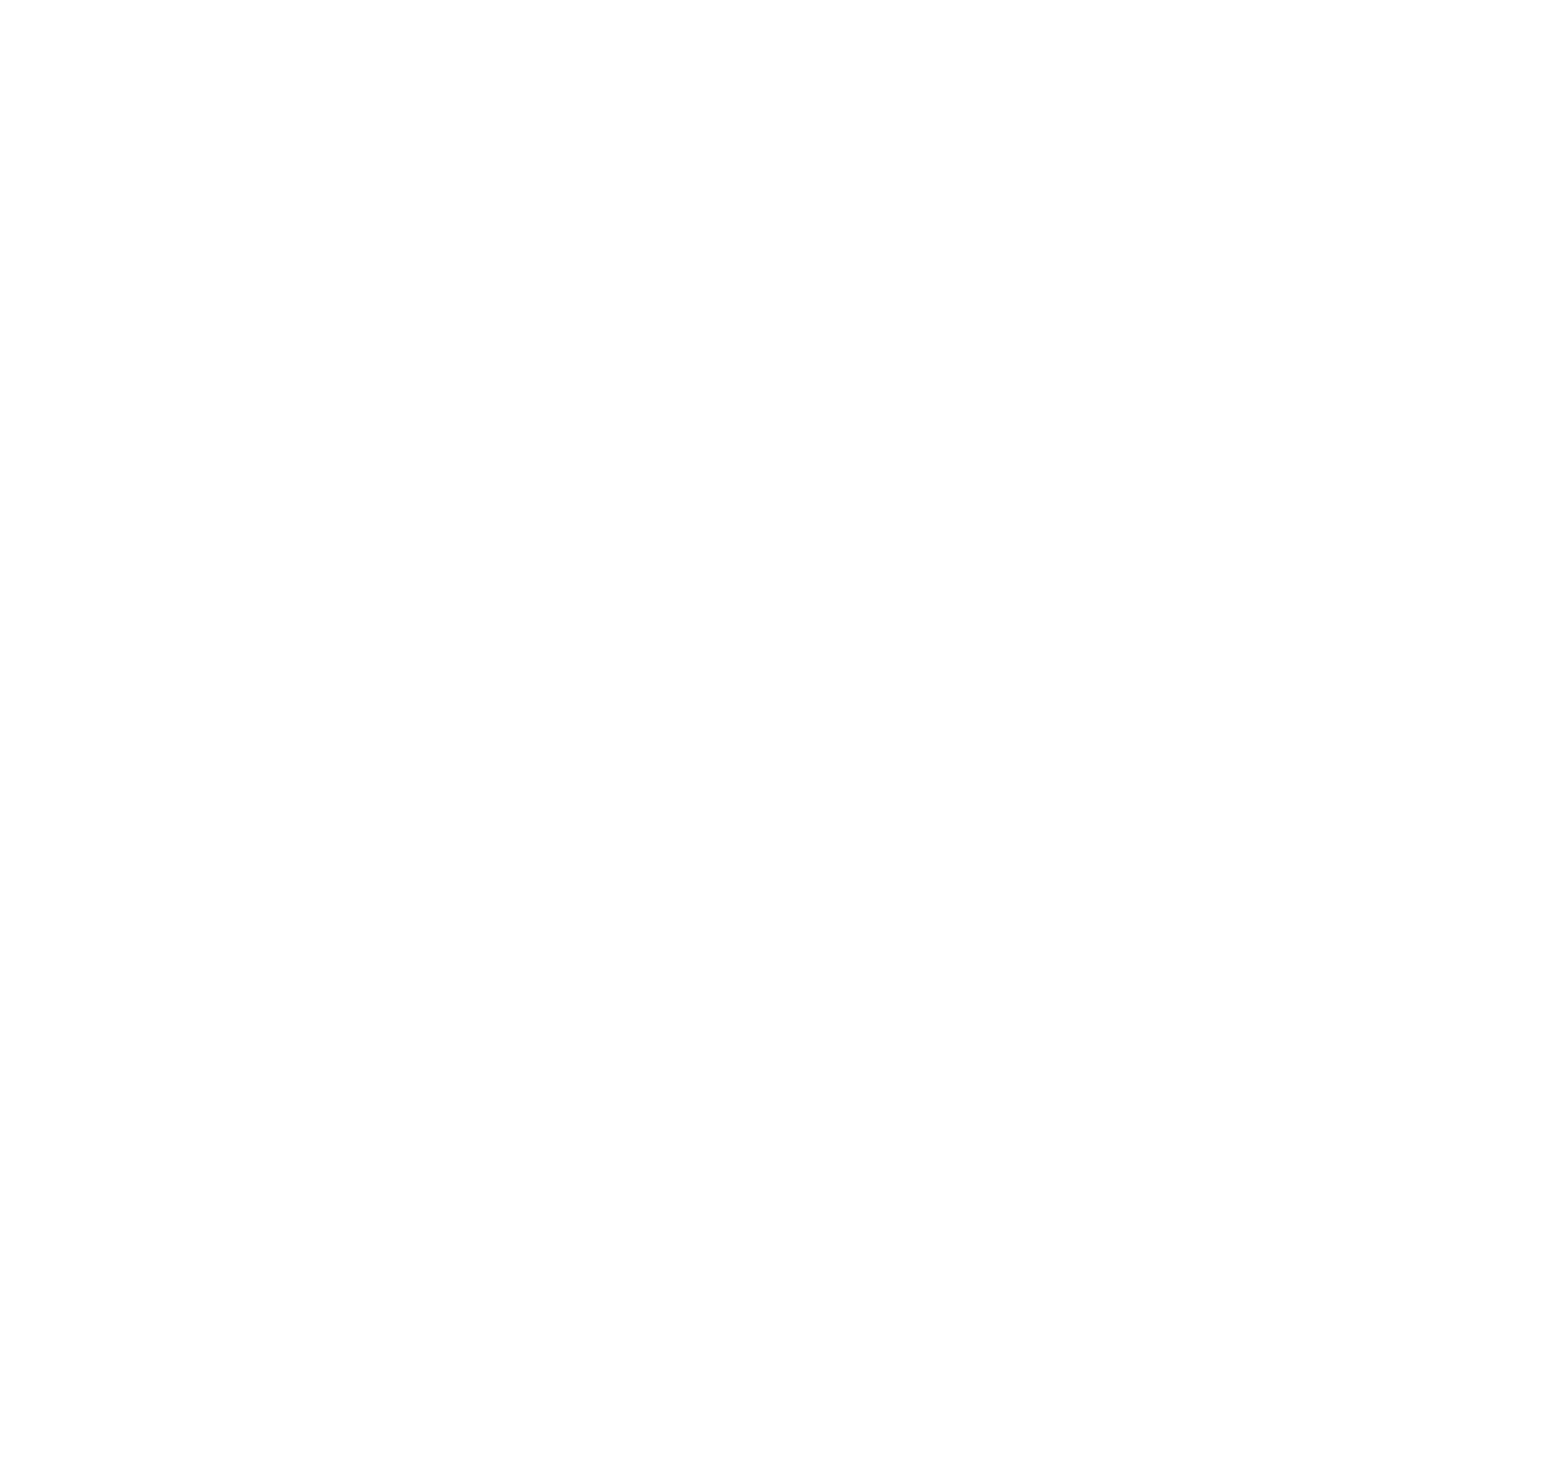 Femasys logo for dark backgrounds (transparent PNG)